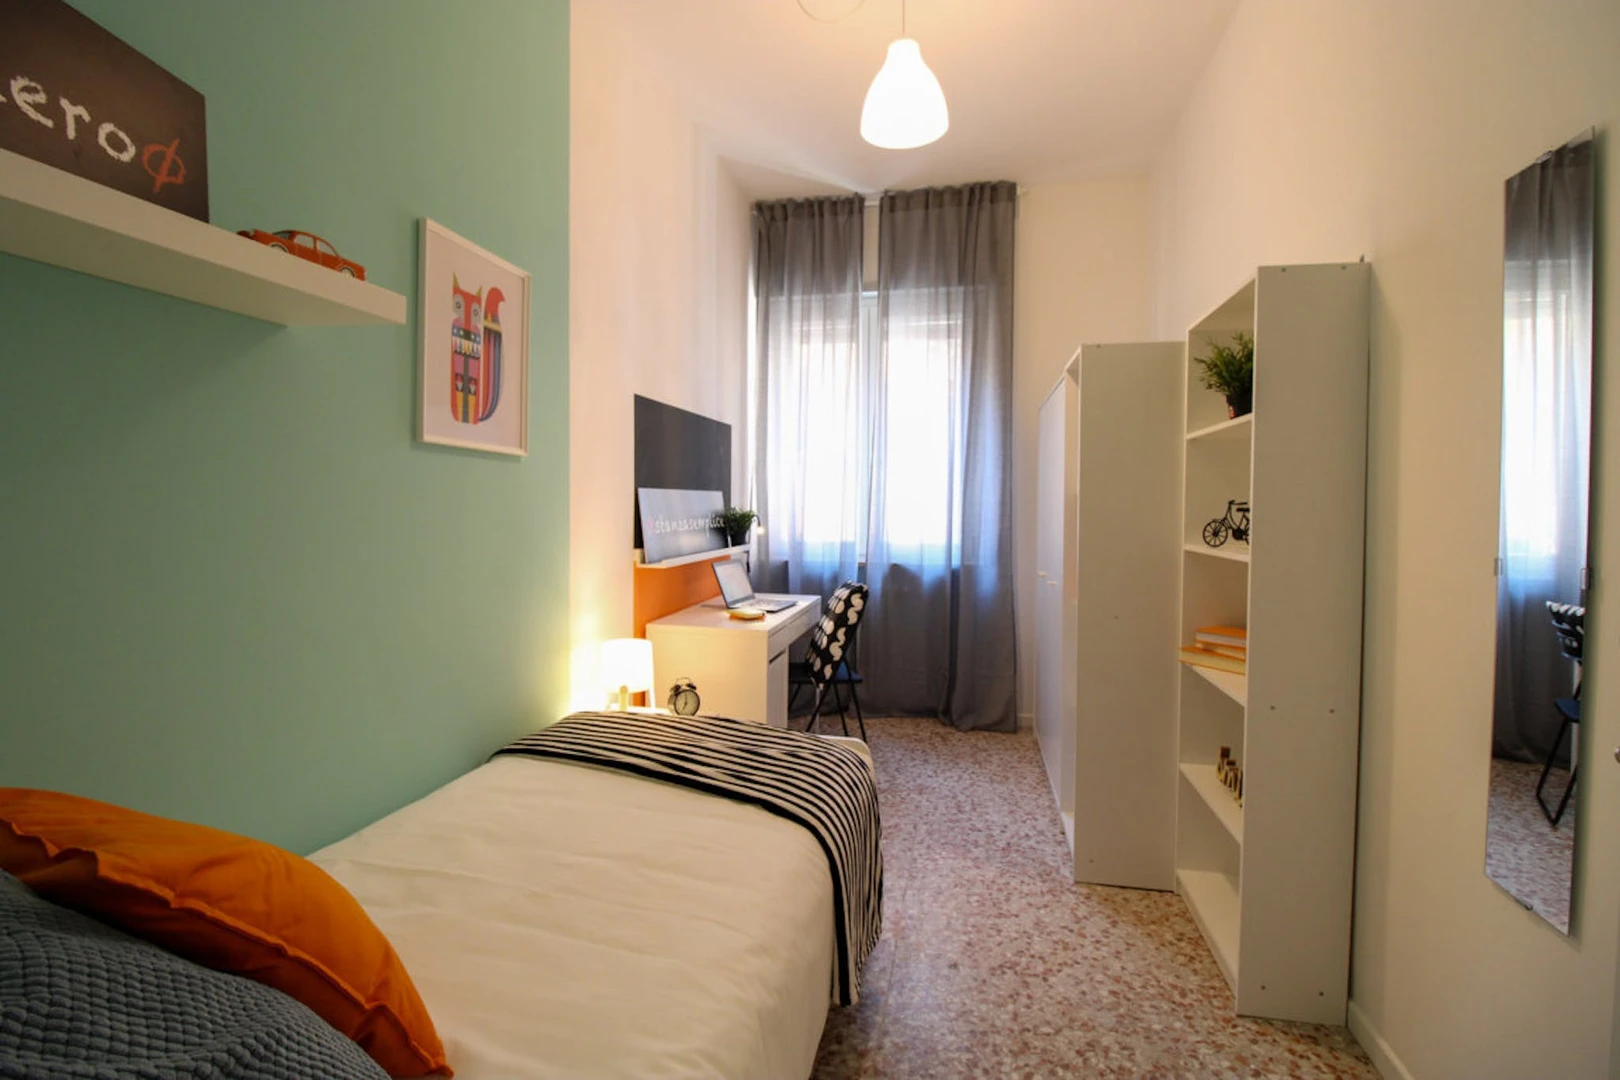 Chambre individuelle bon marché à Pavia